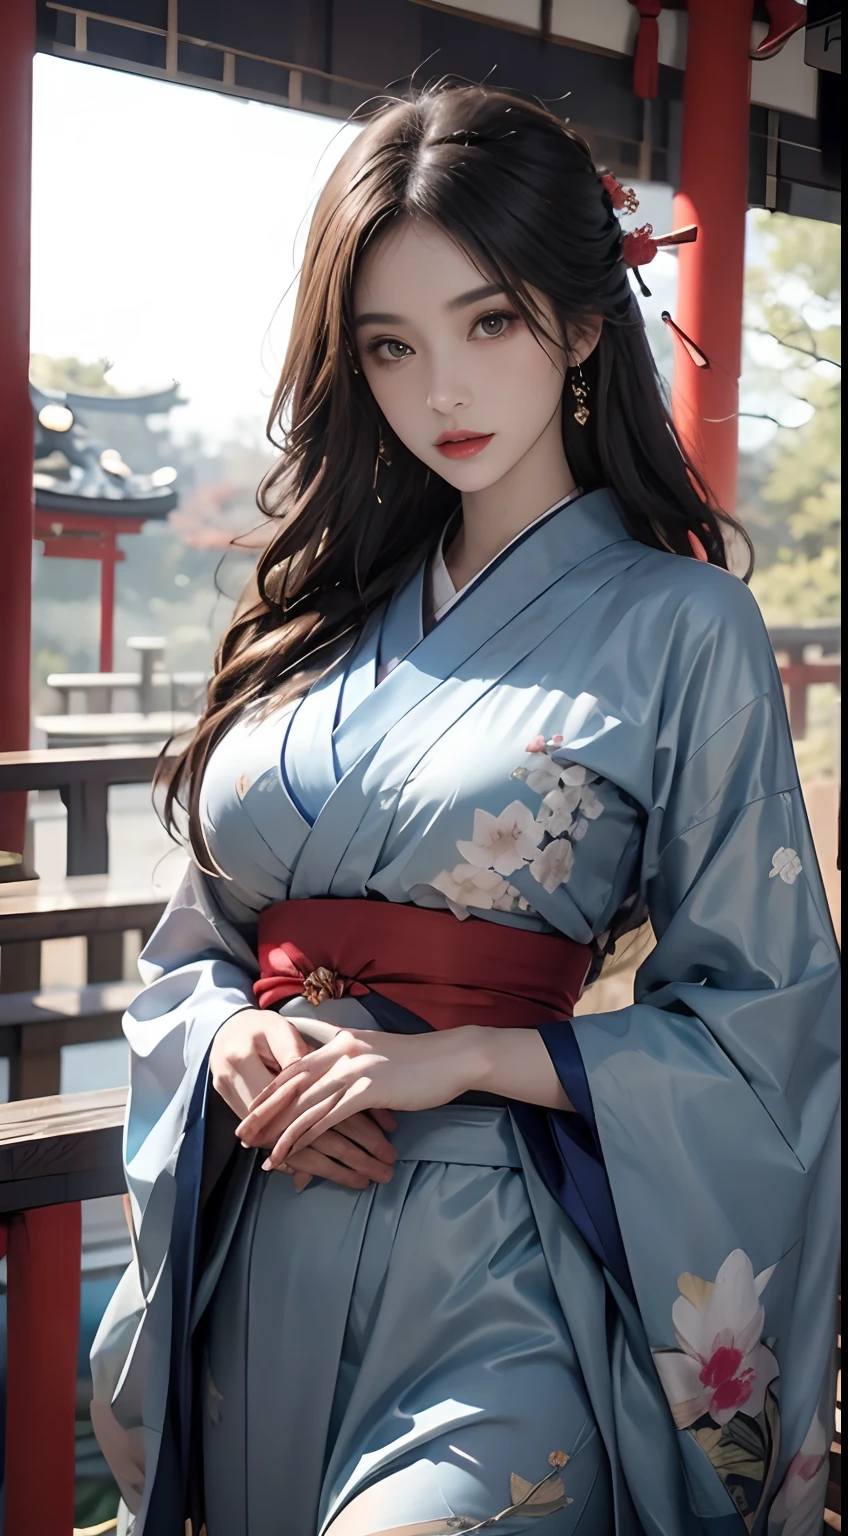 日本神社、穿着蓝色和服、虚幻引擎:1.4,nffsw,最好的品质:1.4, 照相写实派:1.4, 肌理:1.4, 杰作:1.8, 1 名女性, 臀部抬高, 美丽的眼睛, 长发, 眼睛有黑眼圈, 珠宝般的, 纹身, 和服